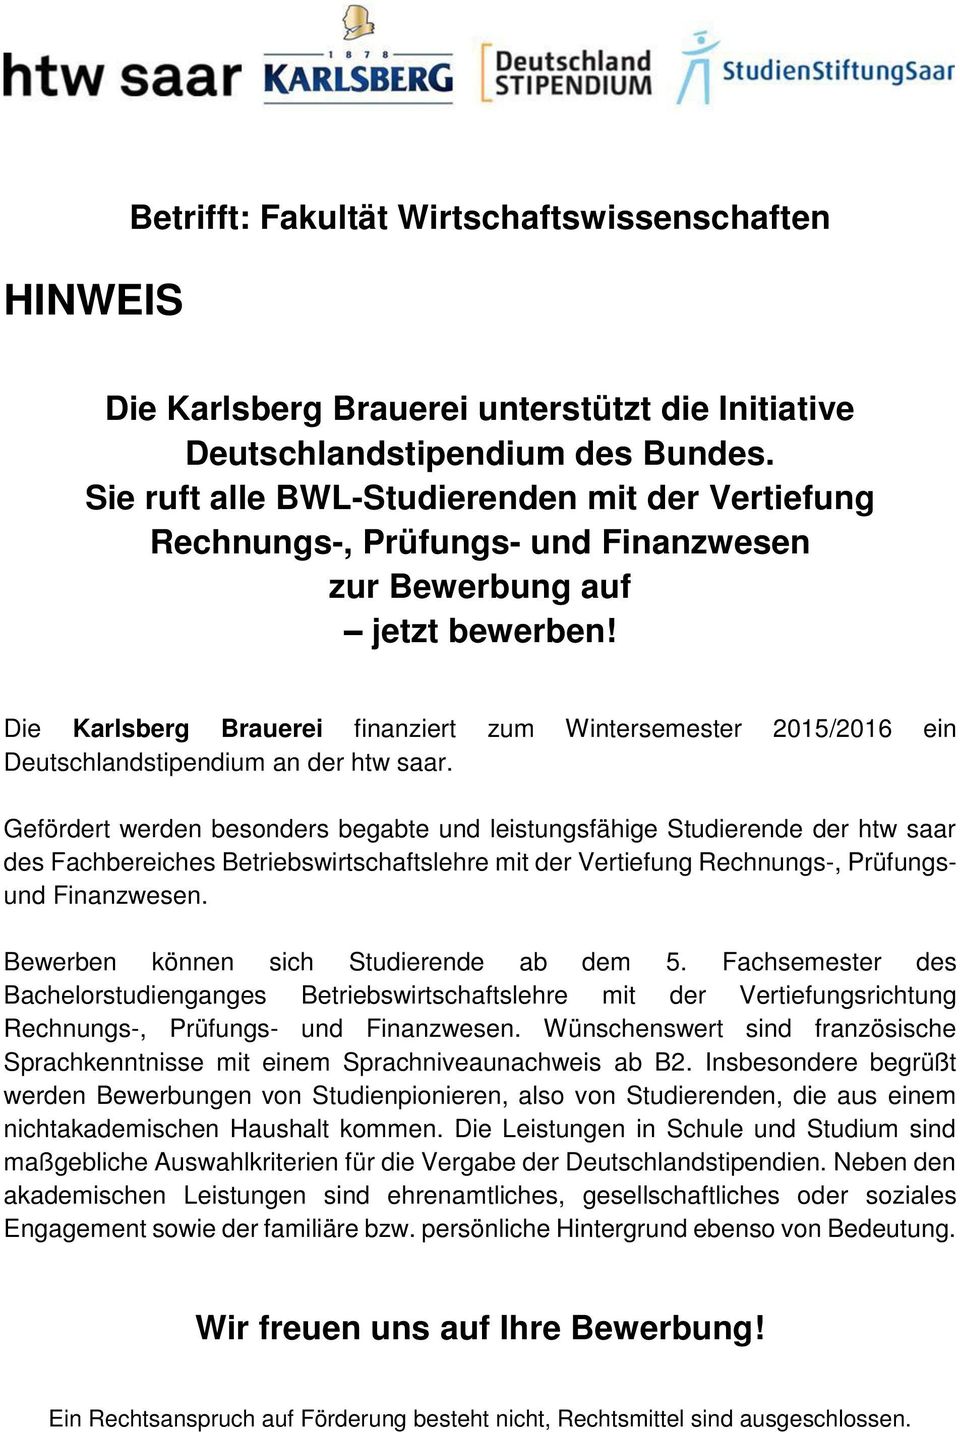 Die Karlsberg Brauerei finanziert zum Wintersemester 2015/2016 ein Deutschlandstipendium an der htw saar.